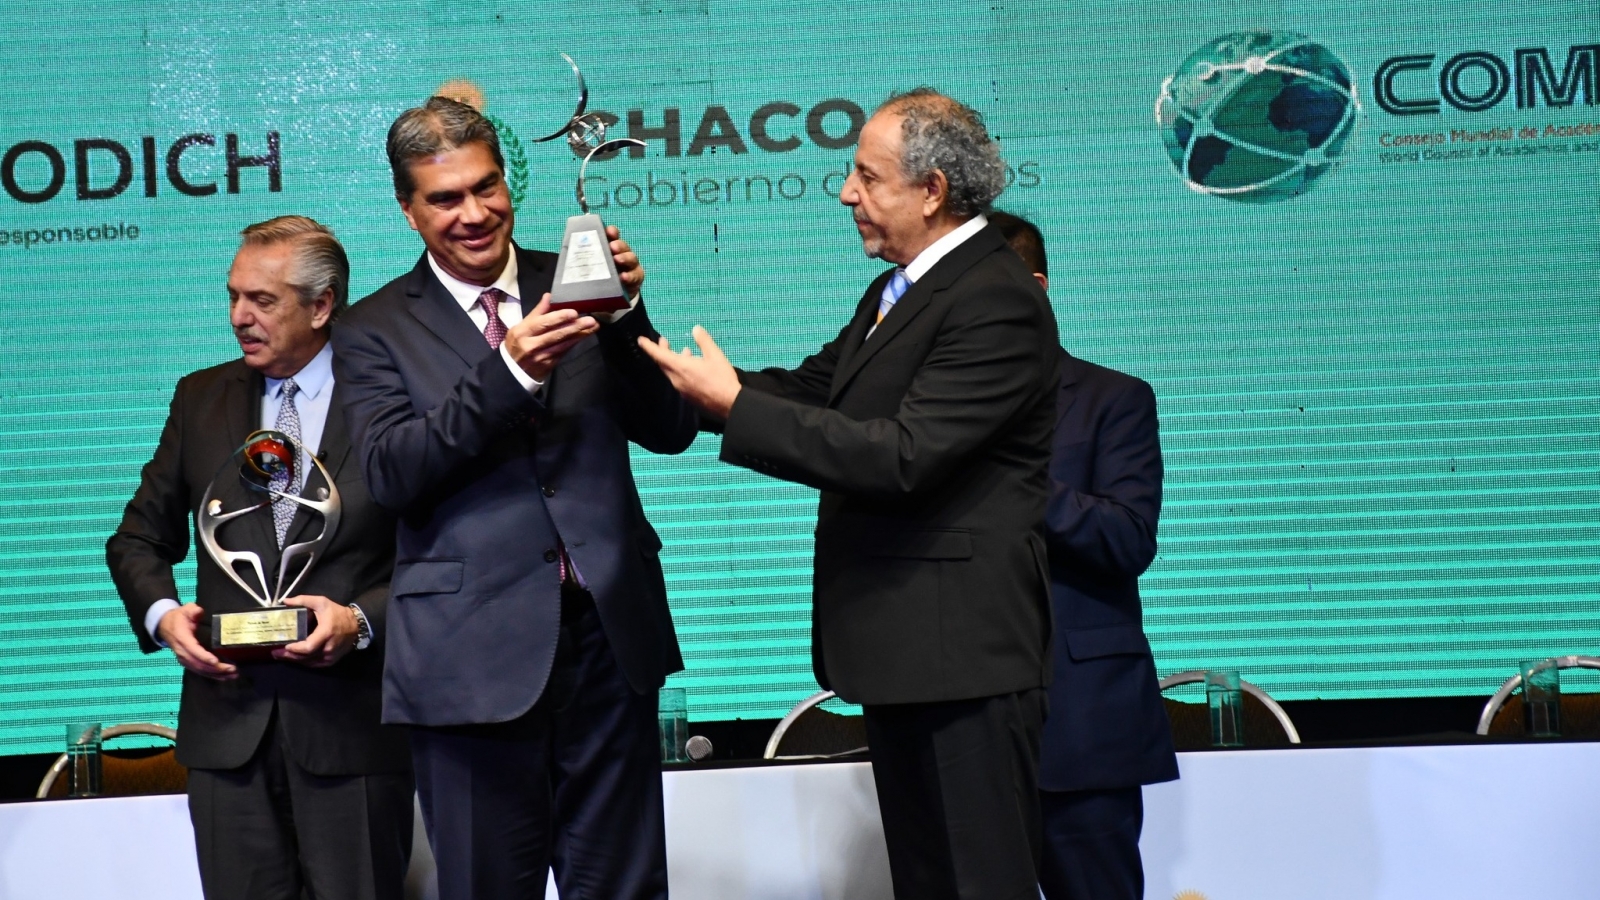 El gobernador Capitanich recibiendo premio a la vida por parte de Camacho, presidente de COAMU